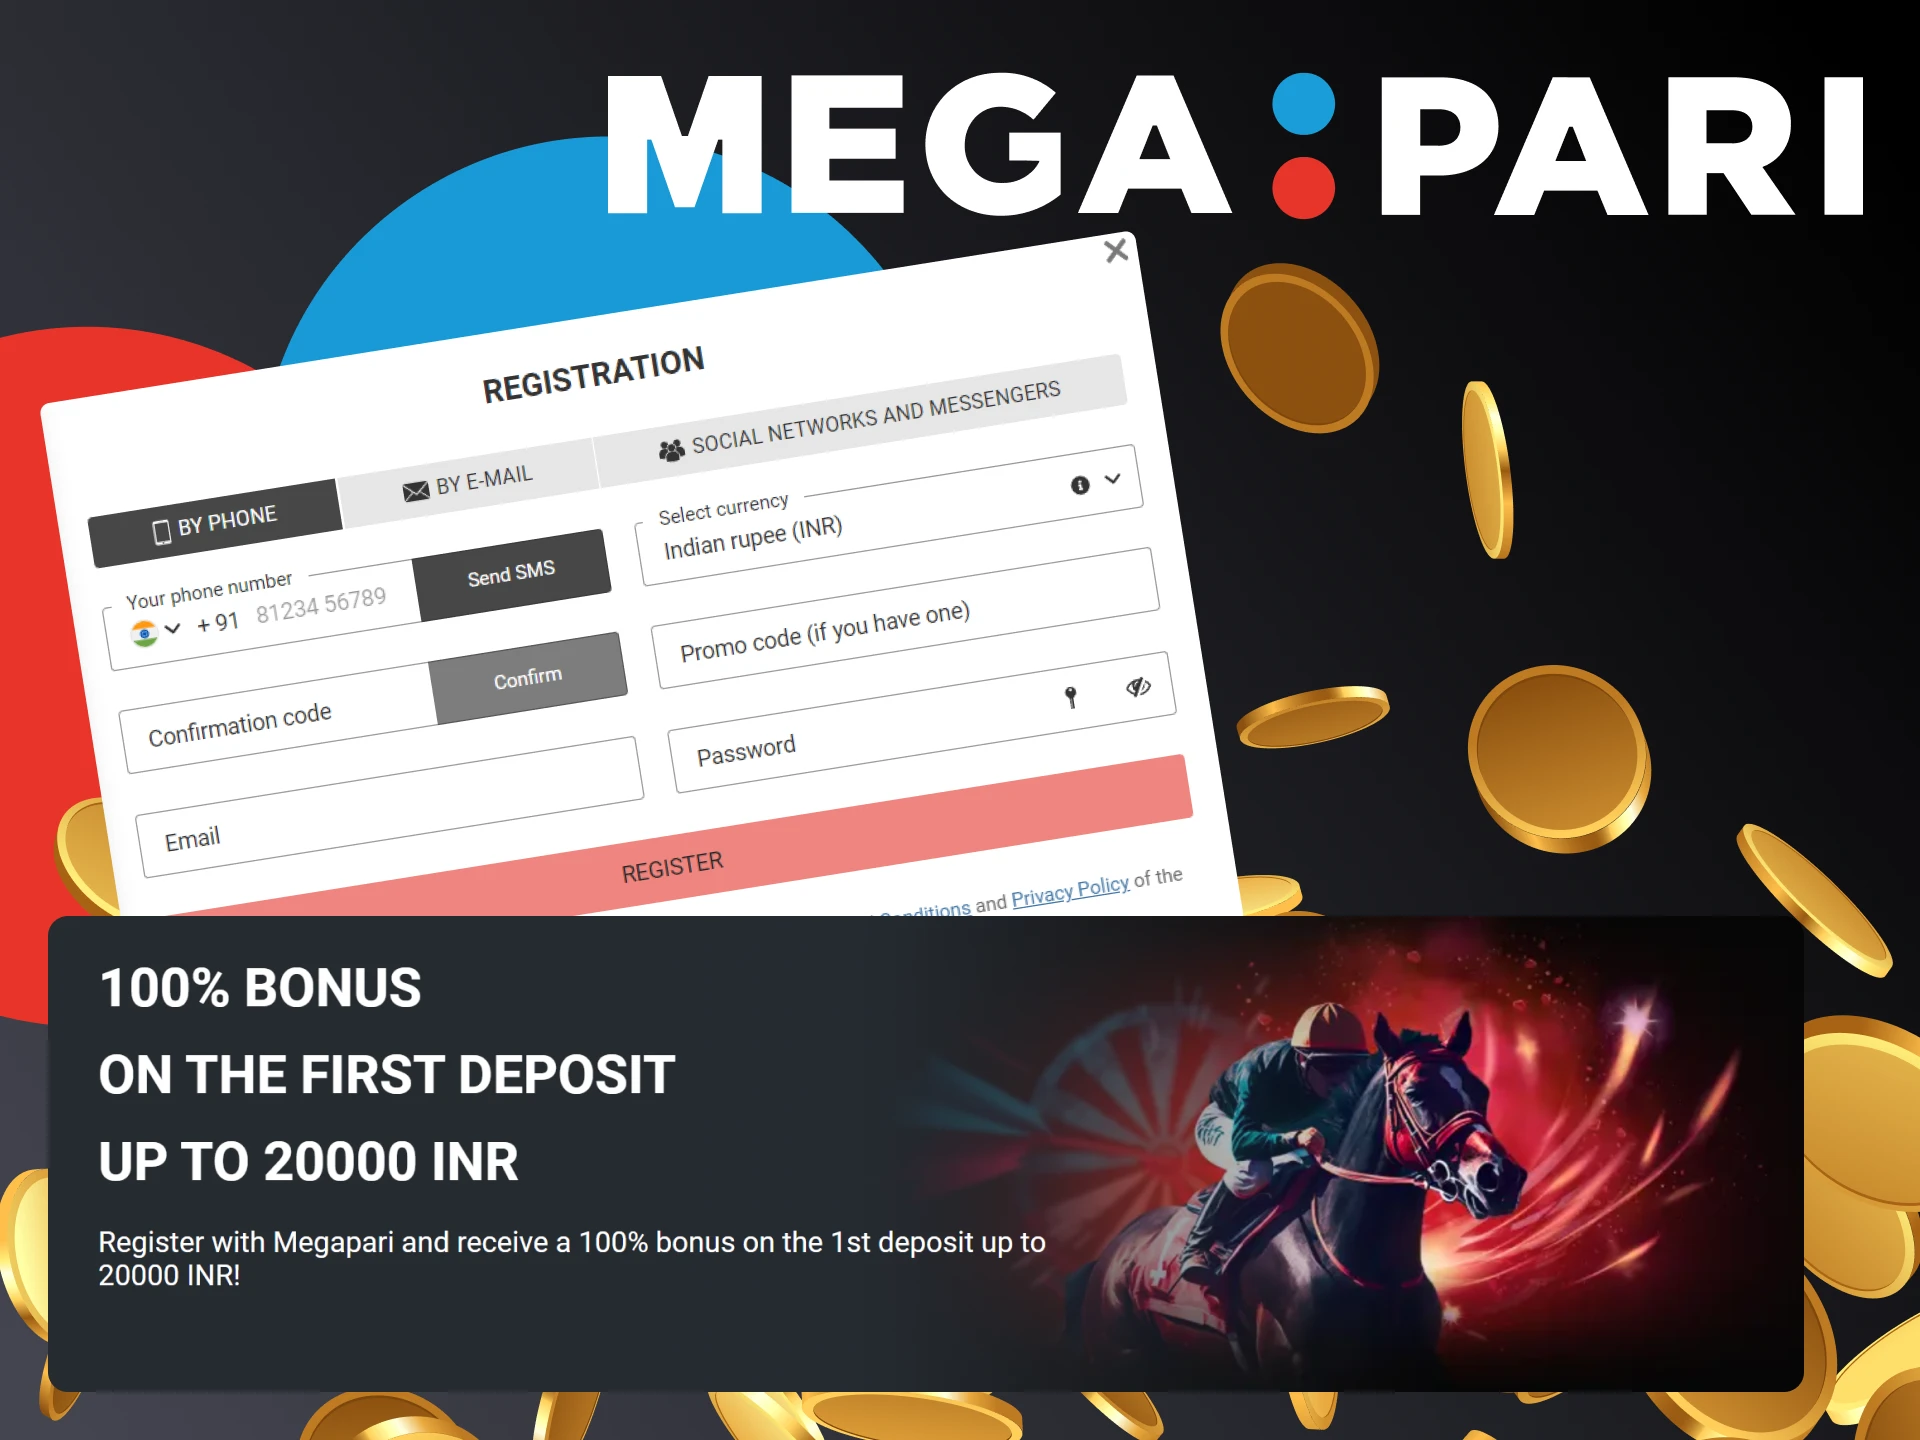 Get a +100% first deposit bonus up to INR 20,000 after Megapari registration.